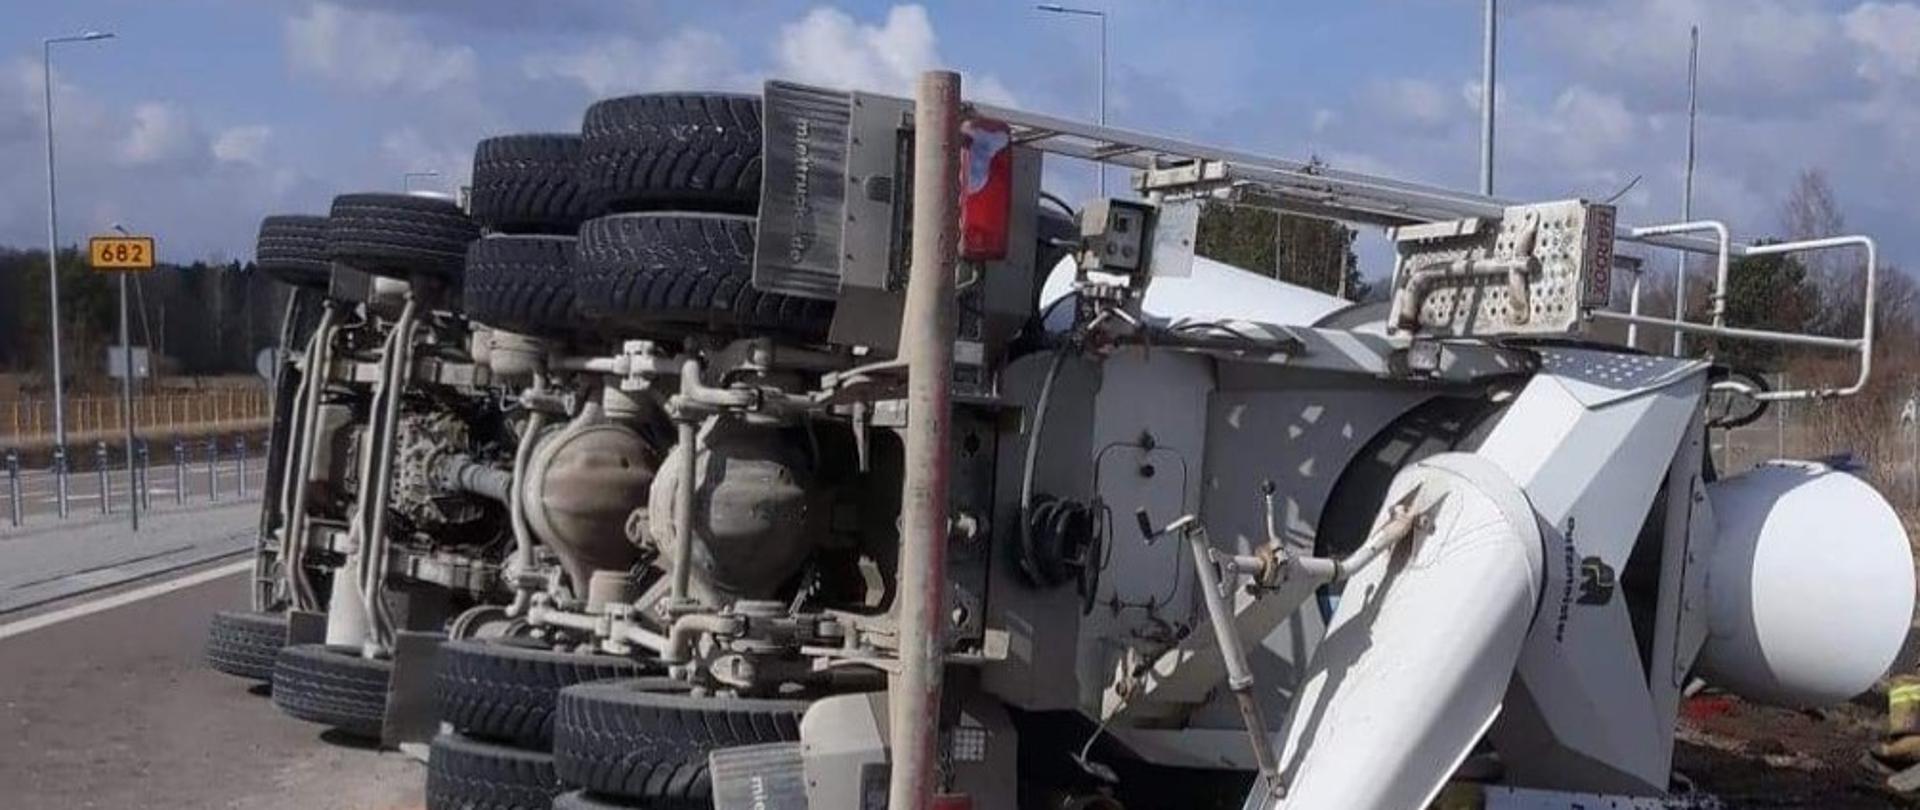 Wypadek samochodu ciężarowego - betoniarka - zablokowane dwa pasy jezdni